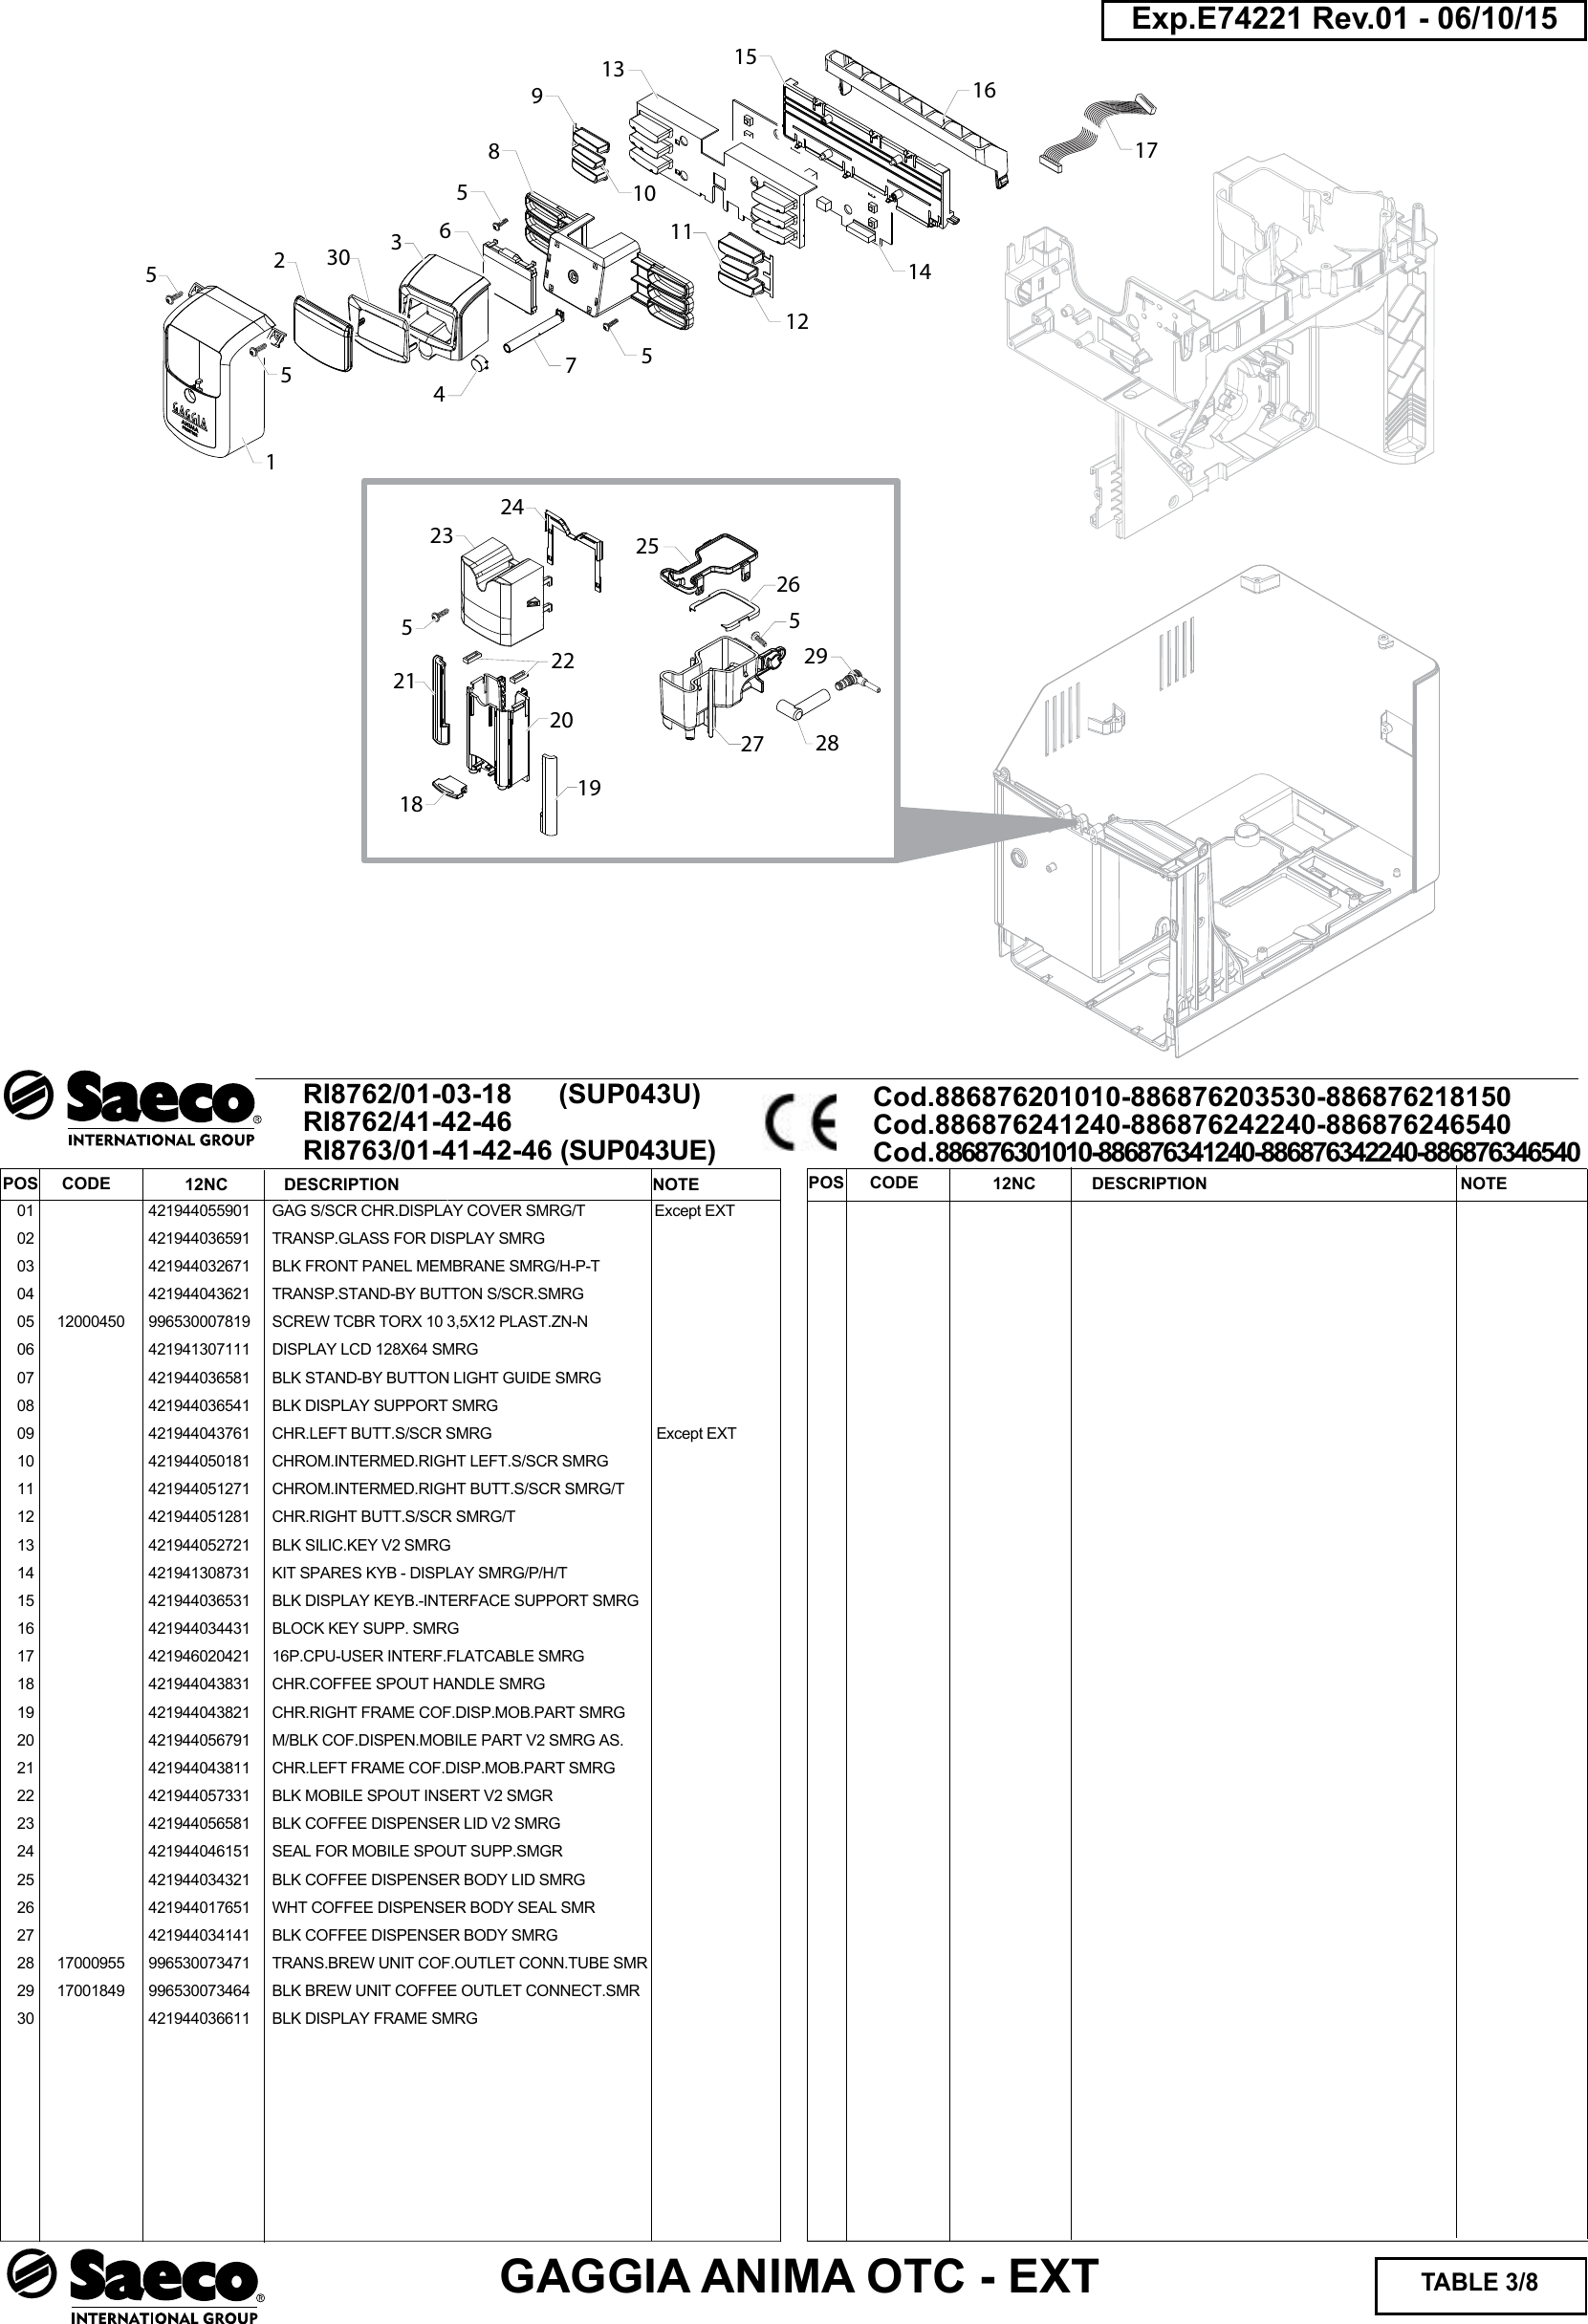 Page 3 of 8 - Gaggia Anima Prestige Parts Diagram User Manual